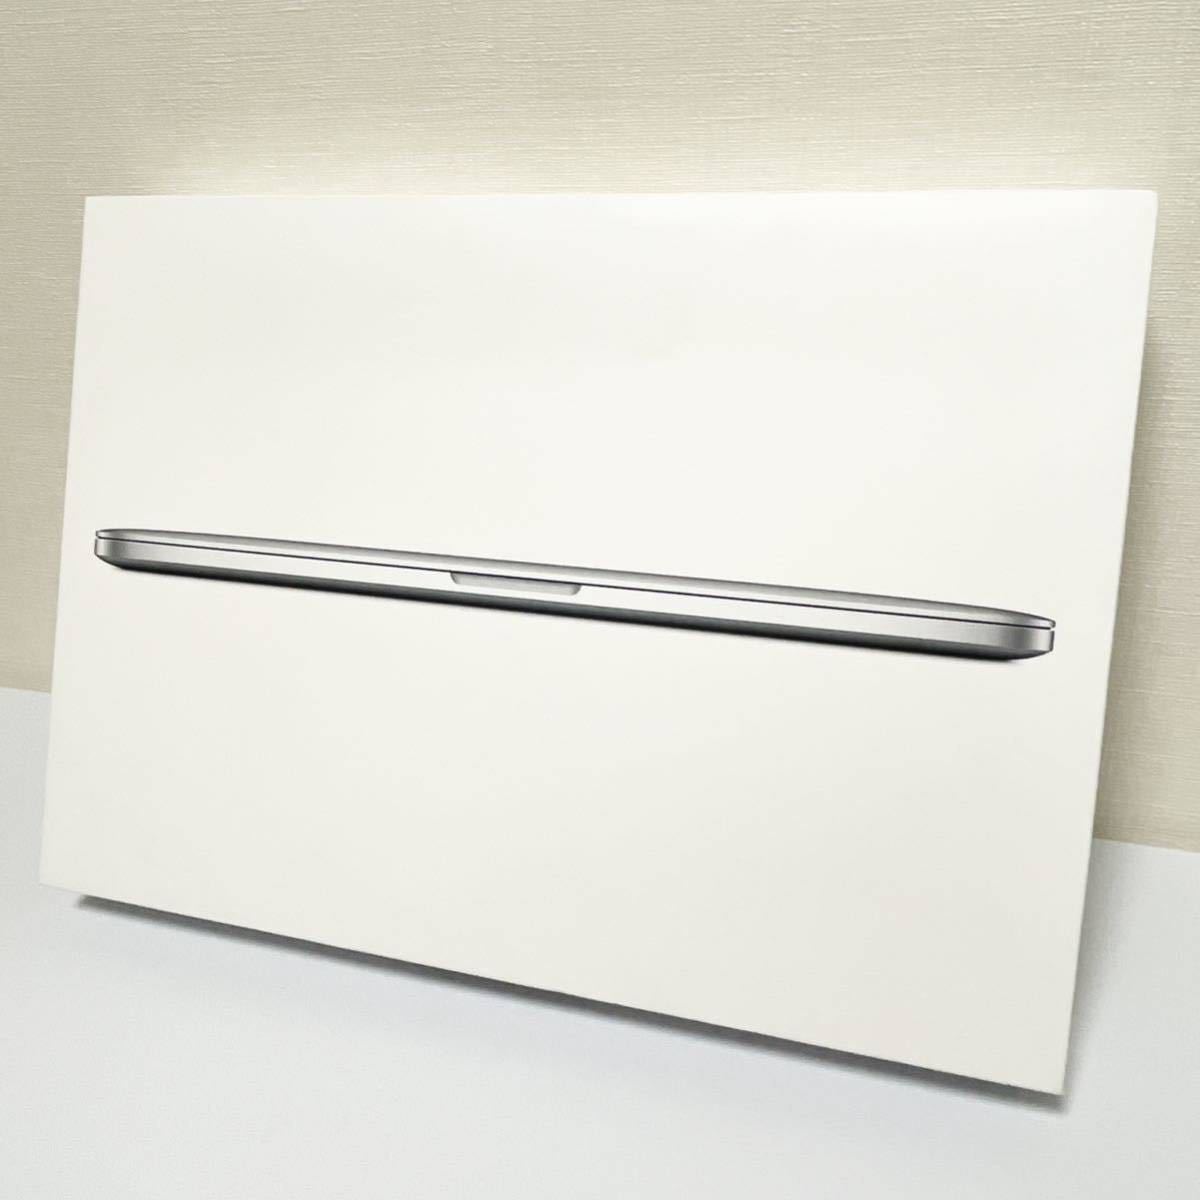 期間限定お試し価格】 Retina A1398 15-inch Pro MacBook Apple 送料